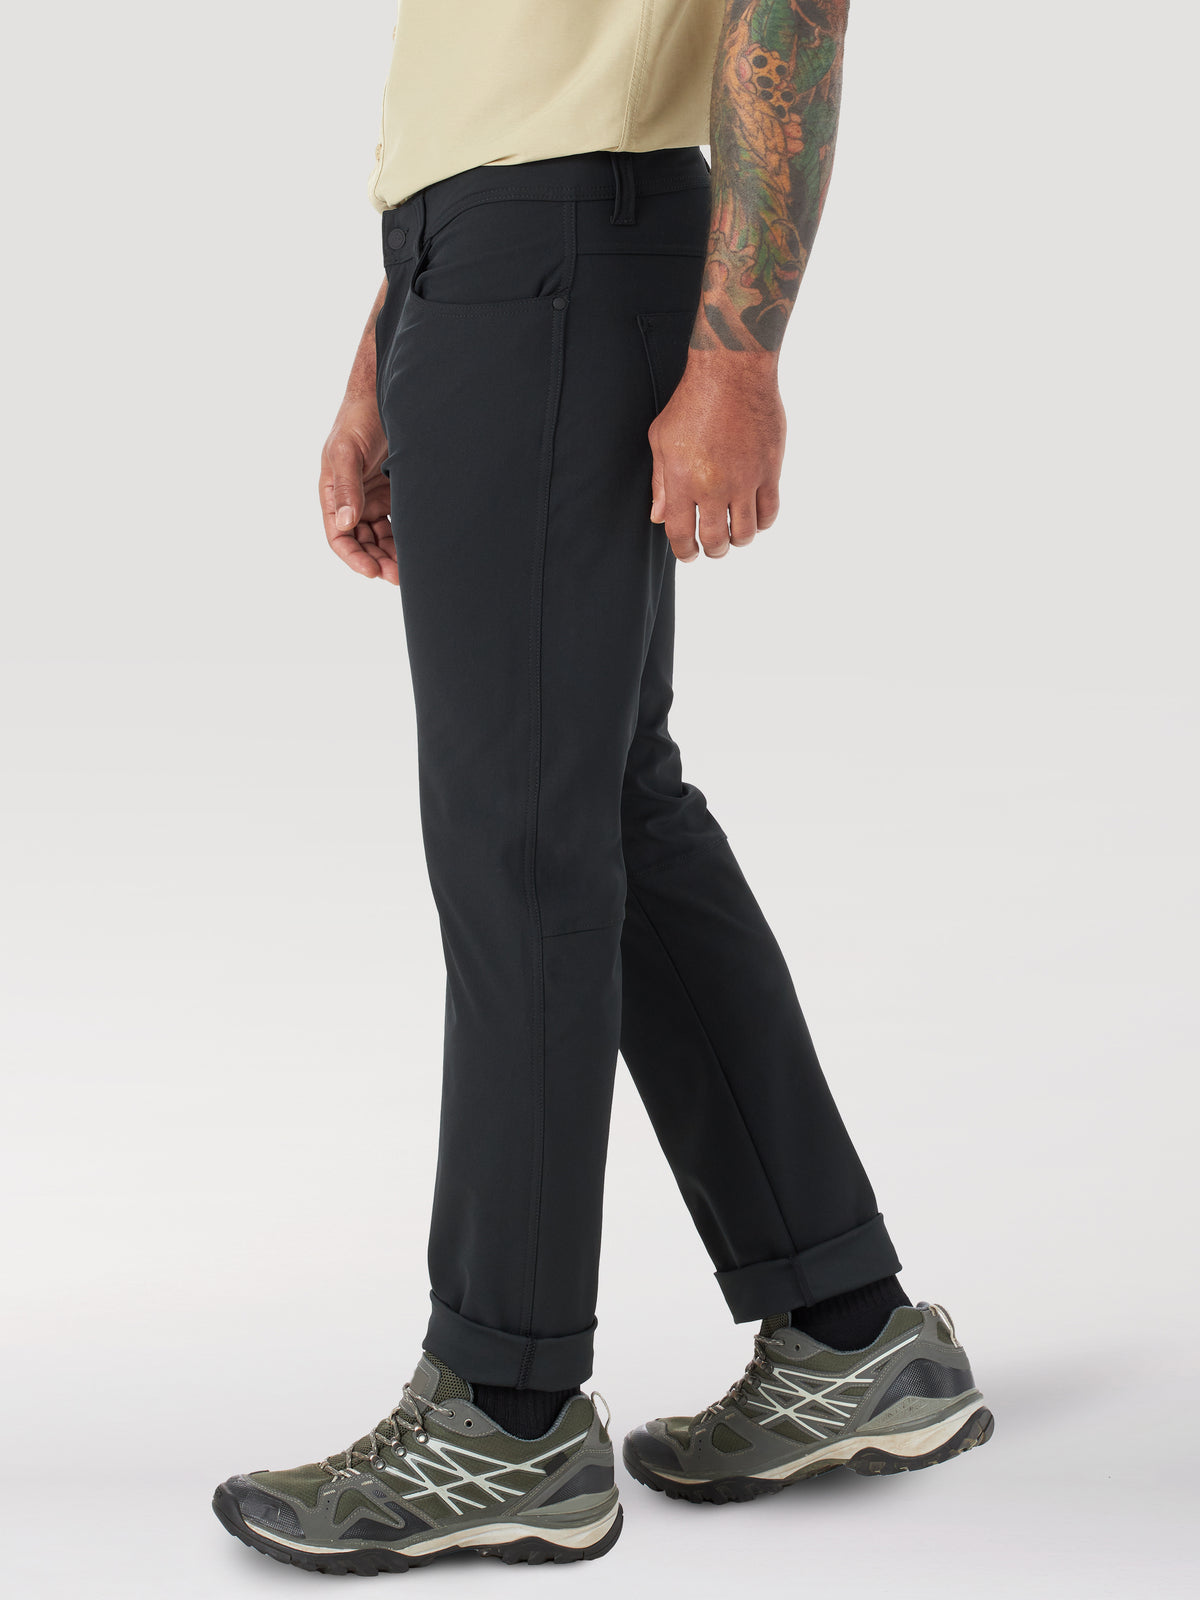 FWDS 5 Pocket Pant in Black